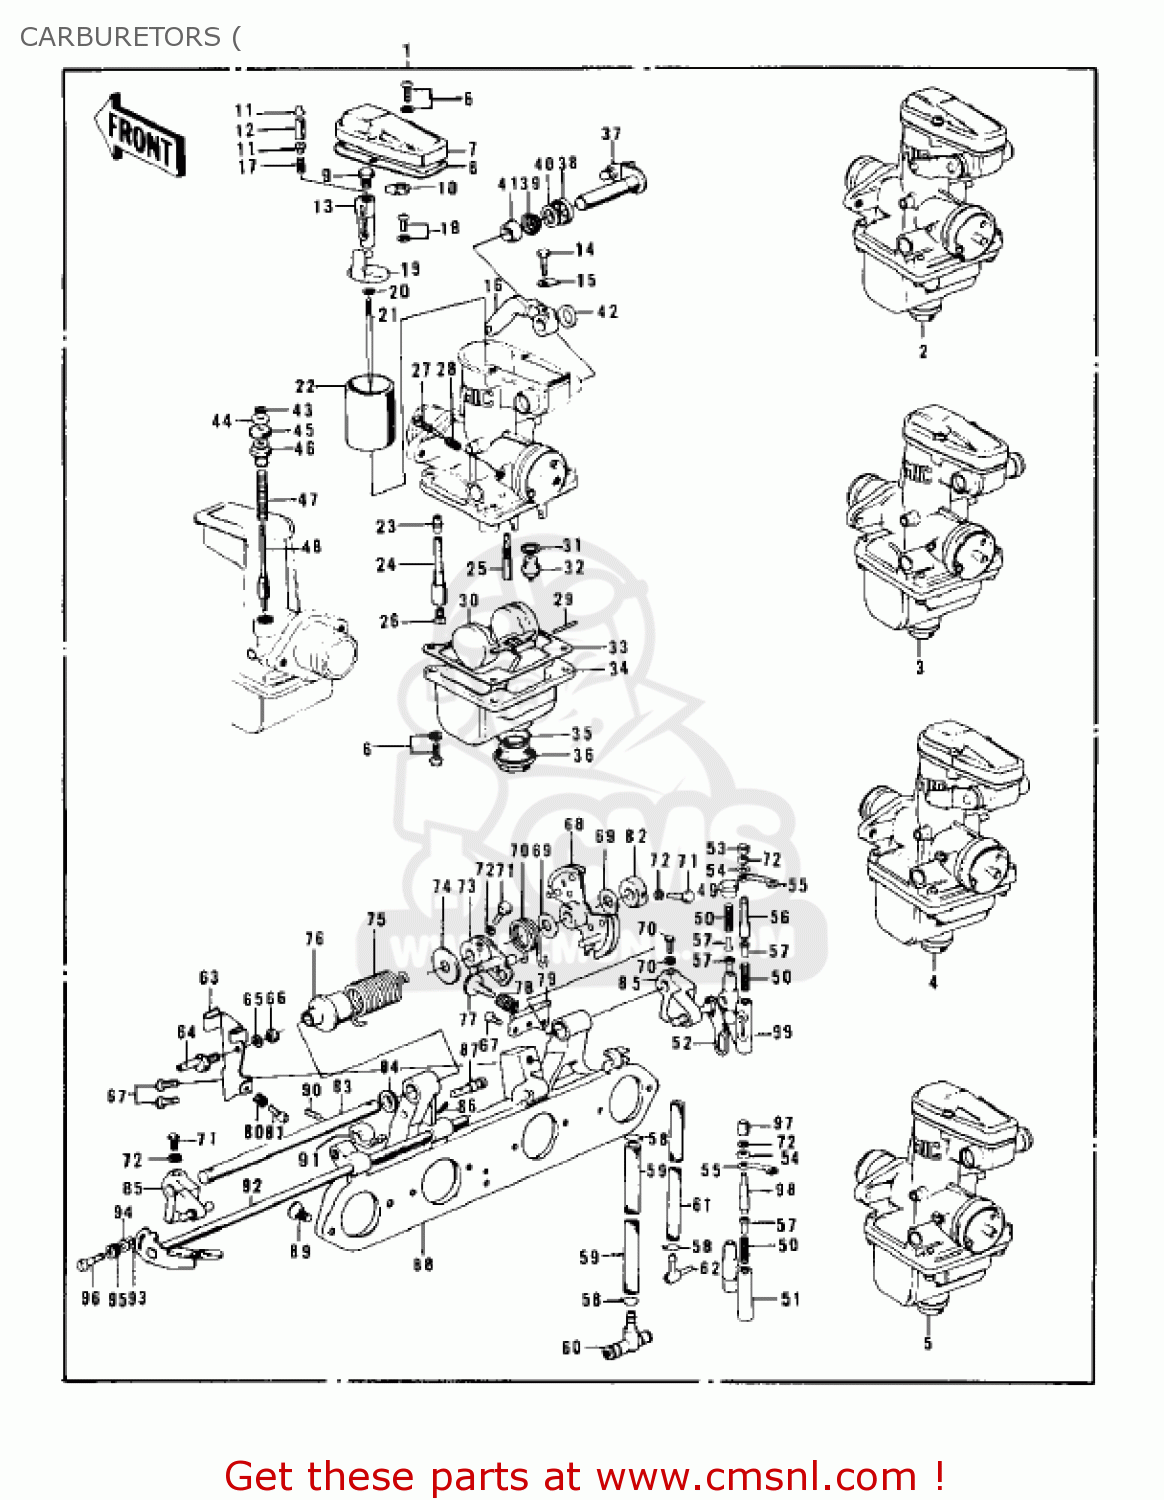 kawasaki-z1-b-1975-usa-carburetors_bigkar119661215_ed74.gif